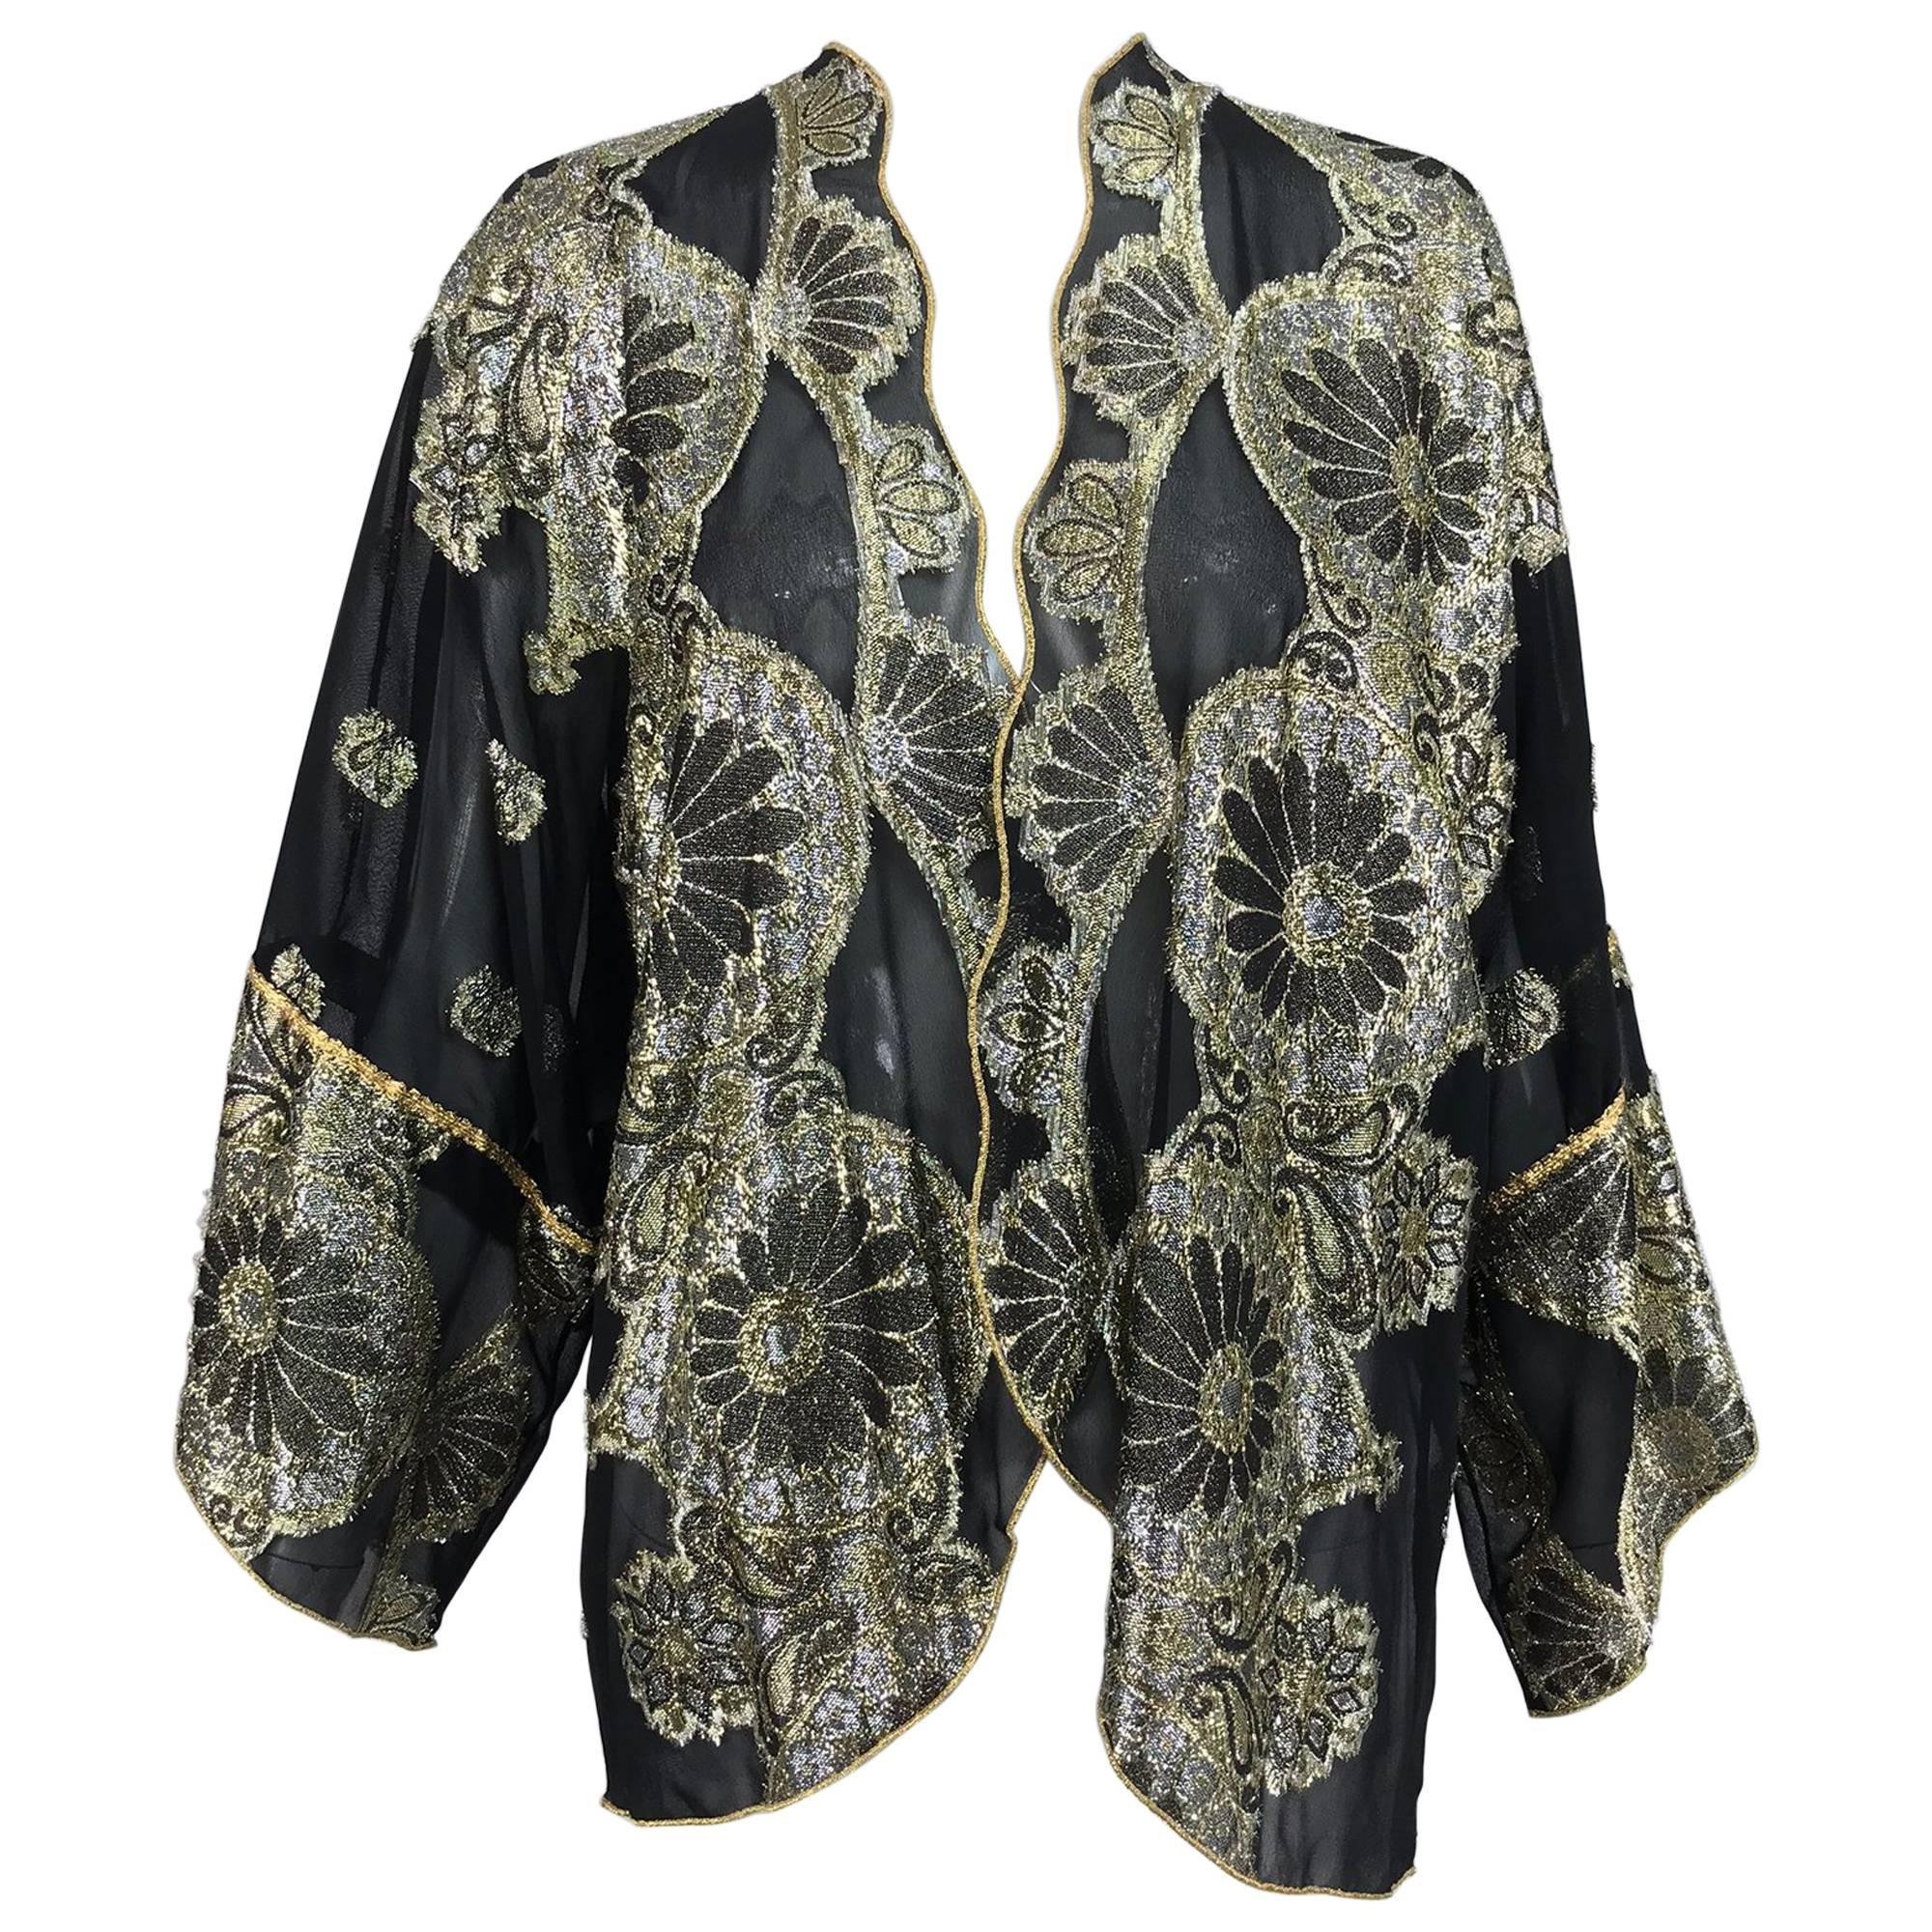 Vintage black chiffon silver and gold metallic kimono jacket 1970s